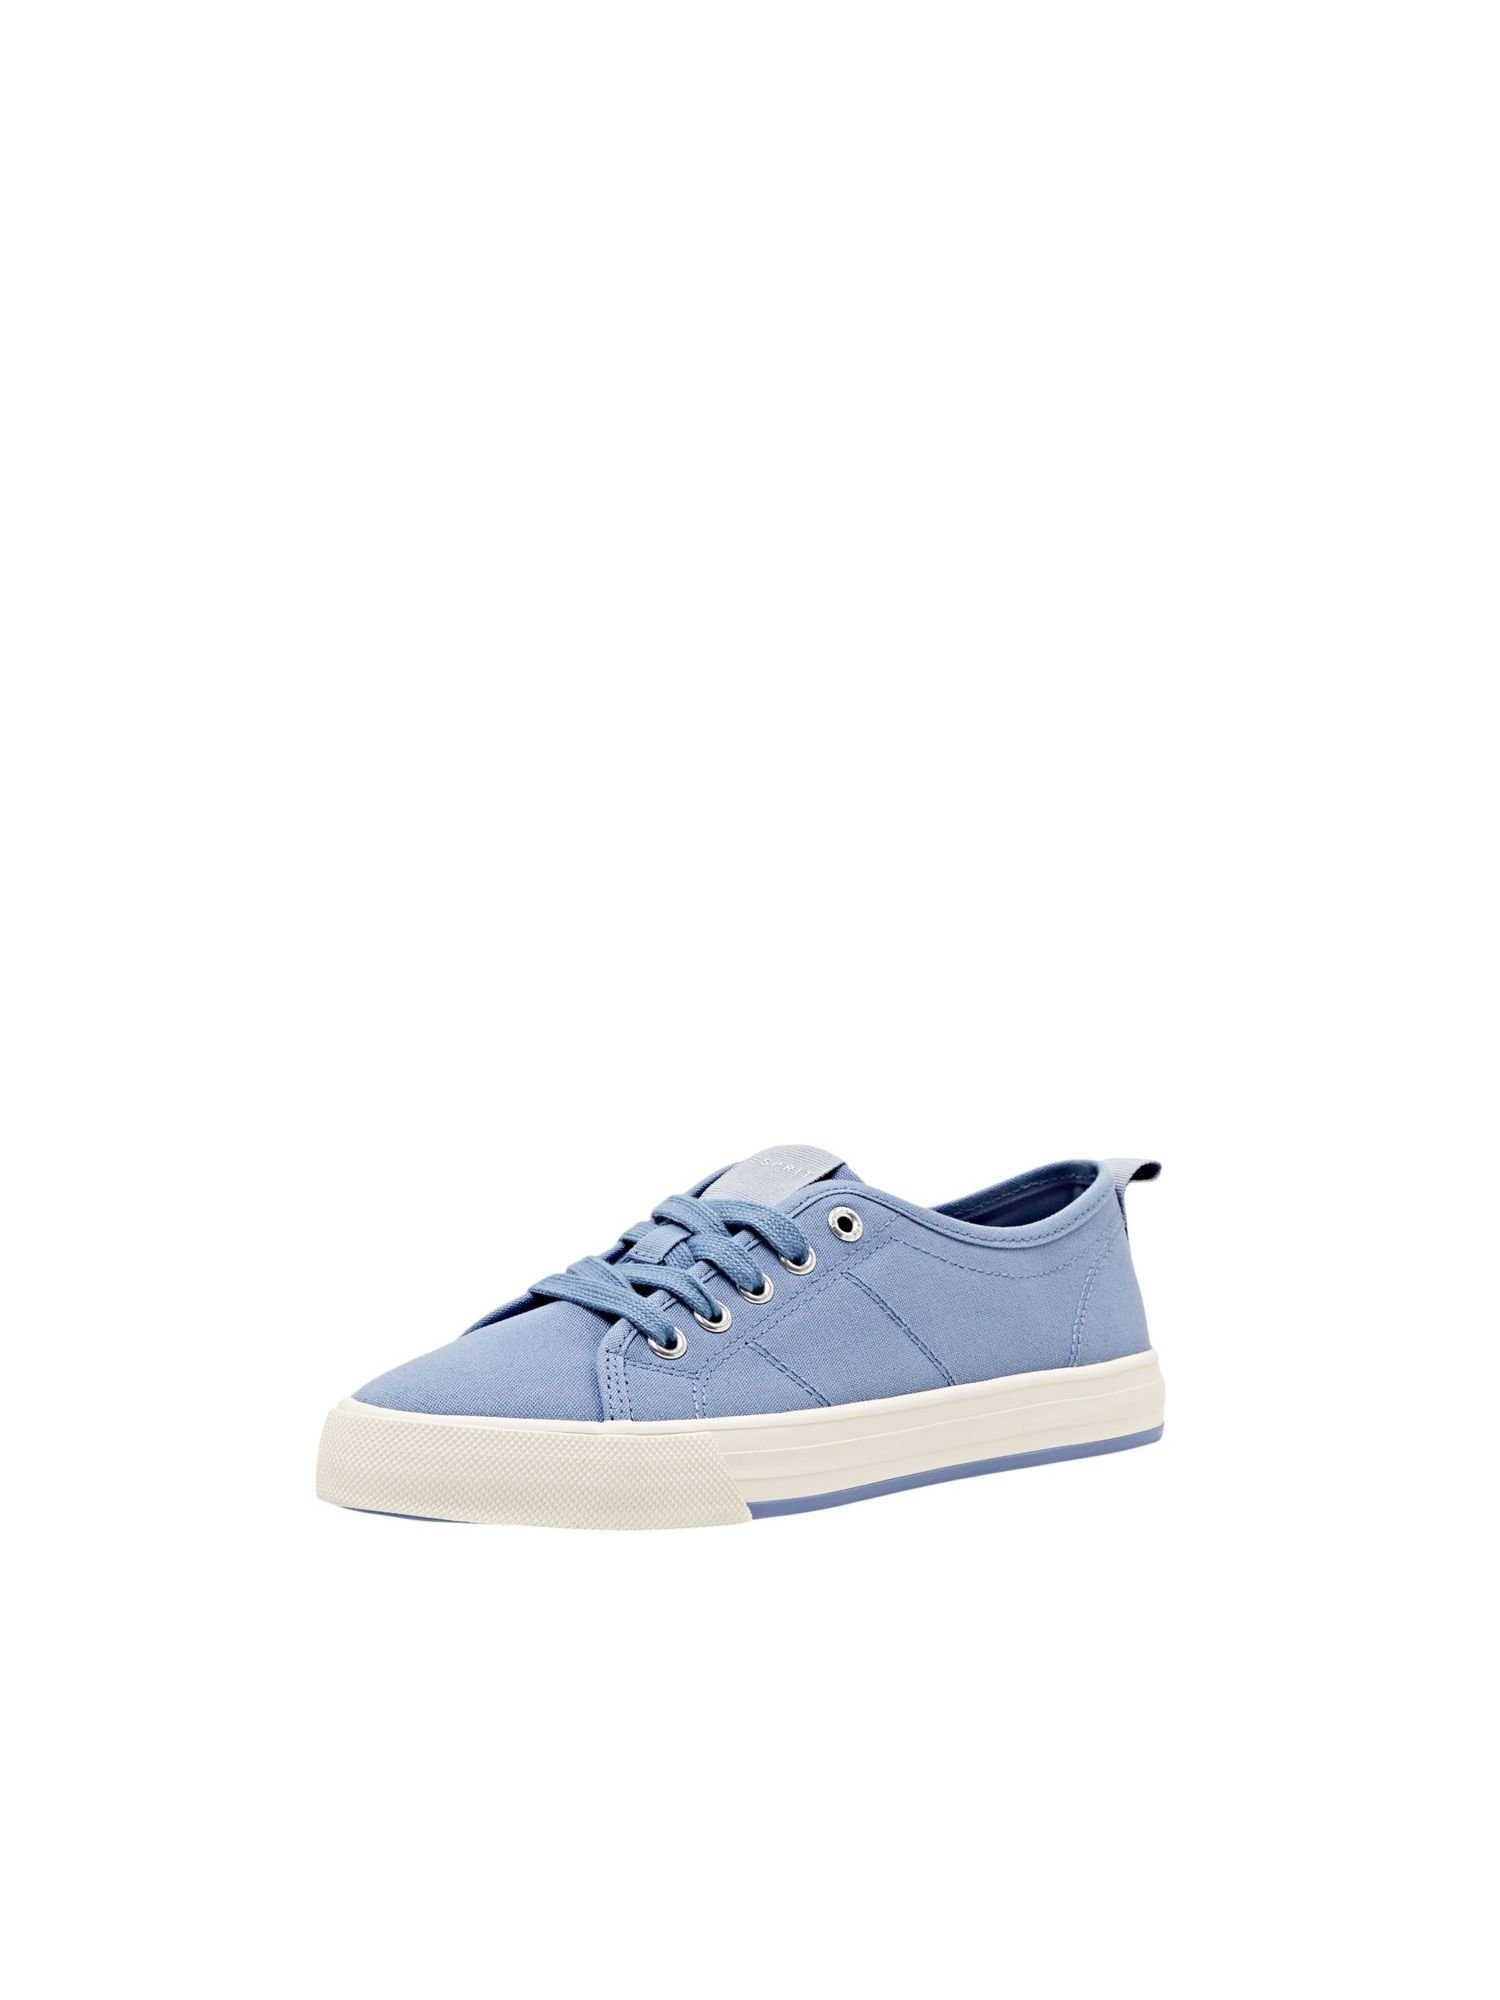 Blaue Esprit Schuhe online kaufen | OTTO